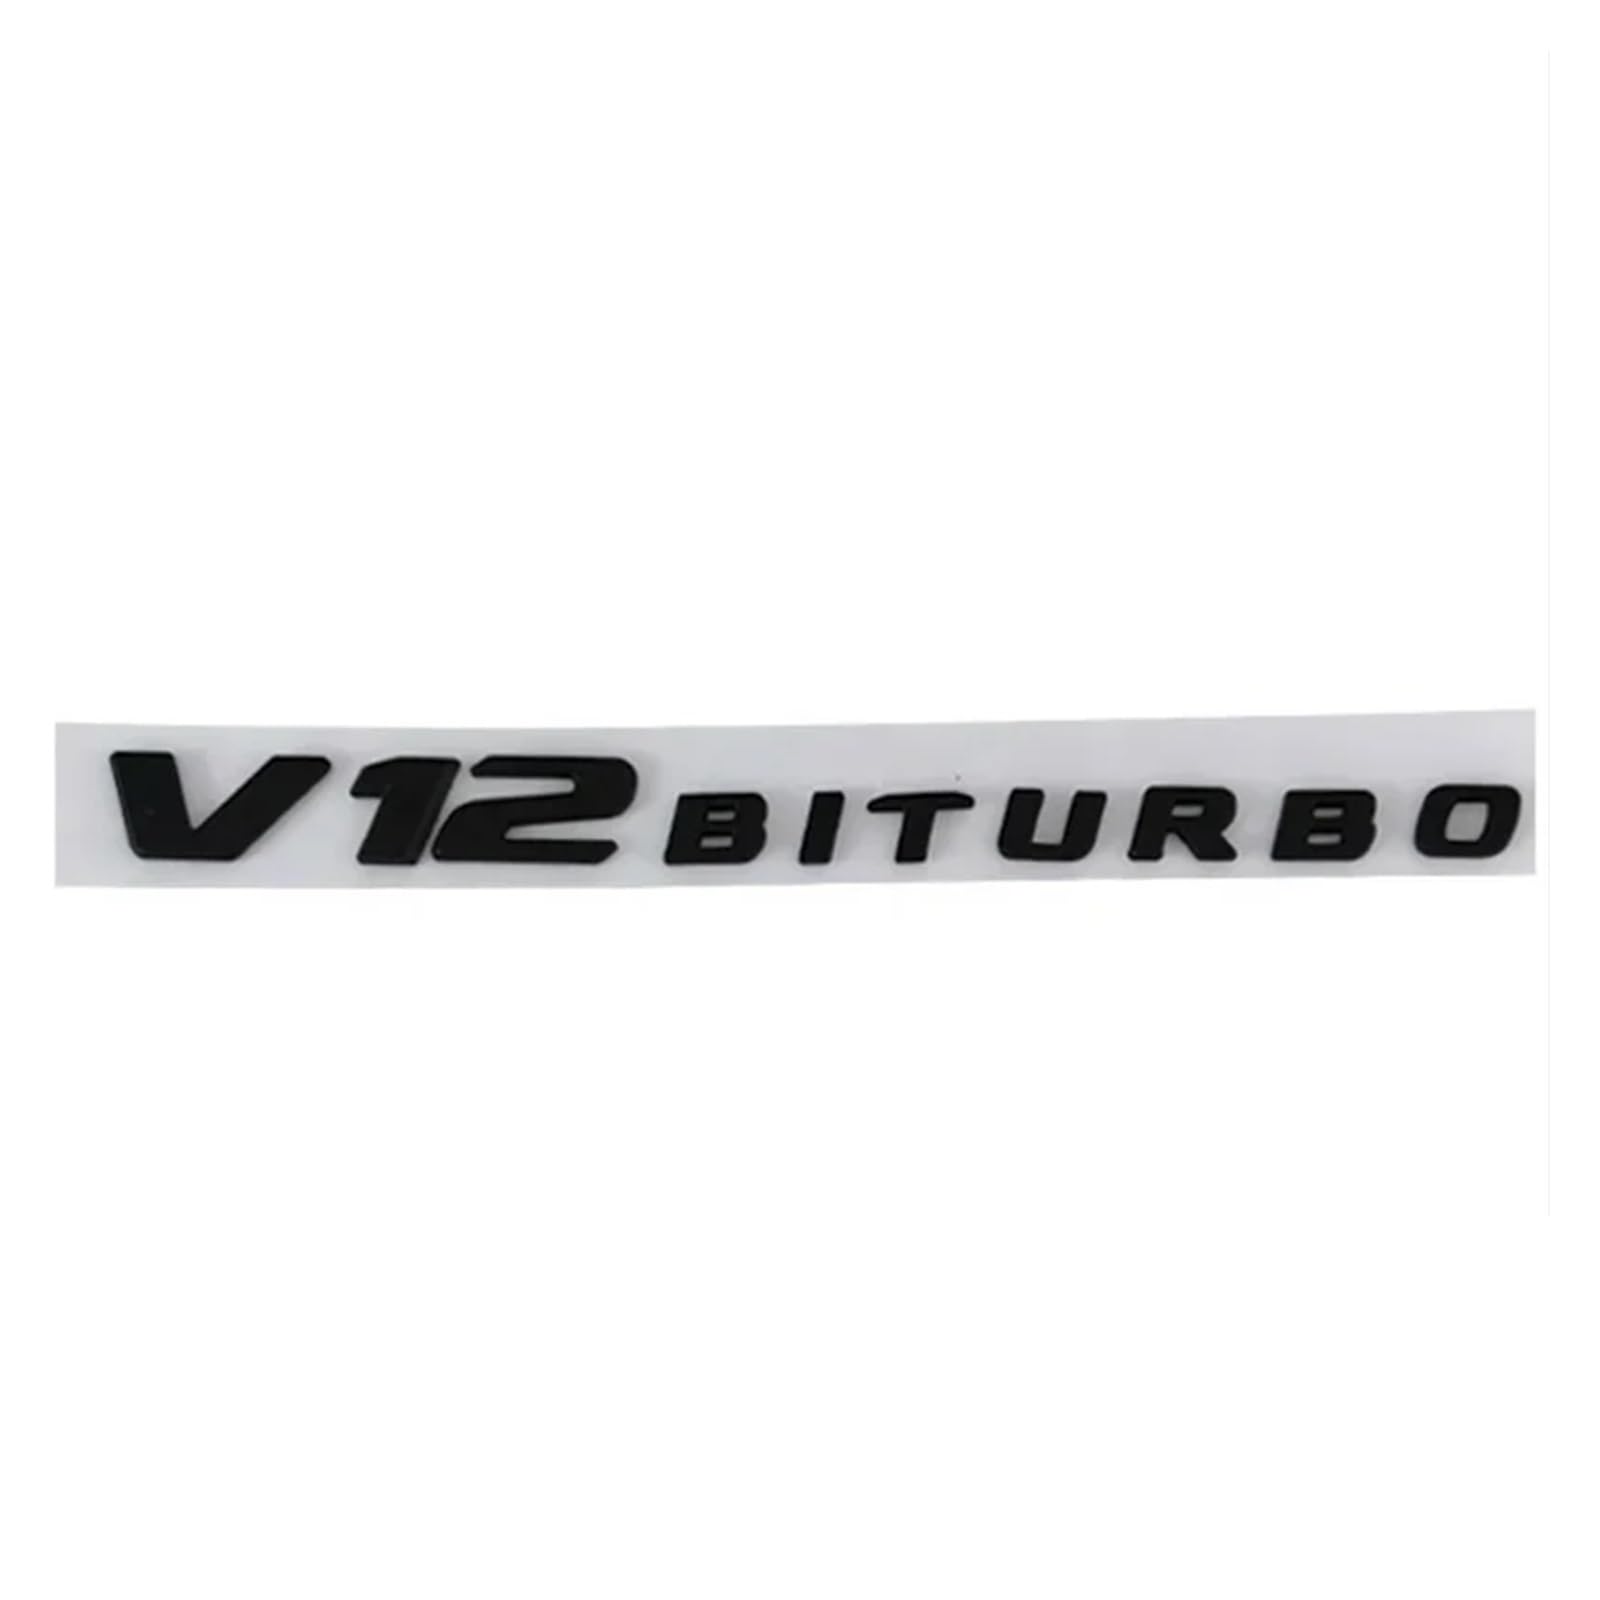 YSRWTBBA 3D ABS V12 BITURBO Auto-Lettre-Seitenemblem, kompatibel mit S65 G65 SL65 W222 W221 R230 R231 W463 W464, Aufkleber, Zubehör, einfach abziehen und abzi(Flat Matte Black) von YSRWTBBA